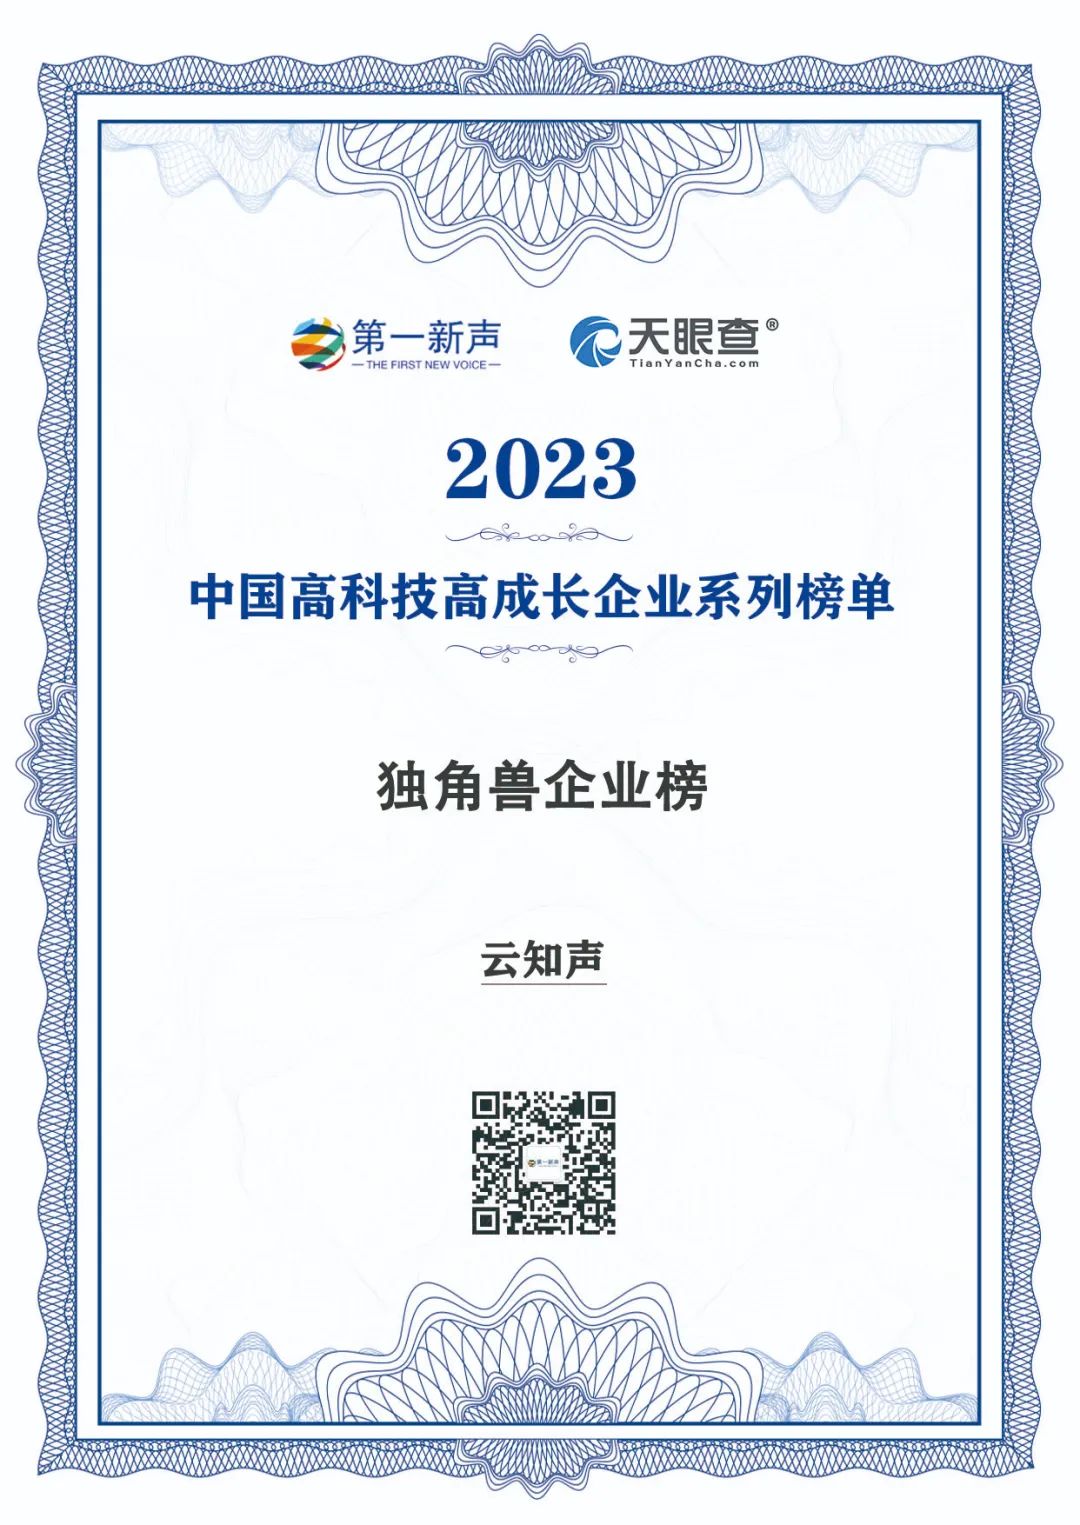 ​云知声荣登“2023年度中国高科技高成长企业系列榜单”